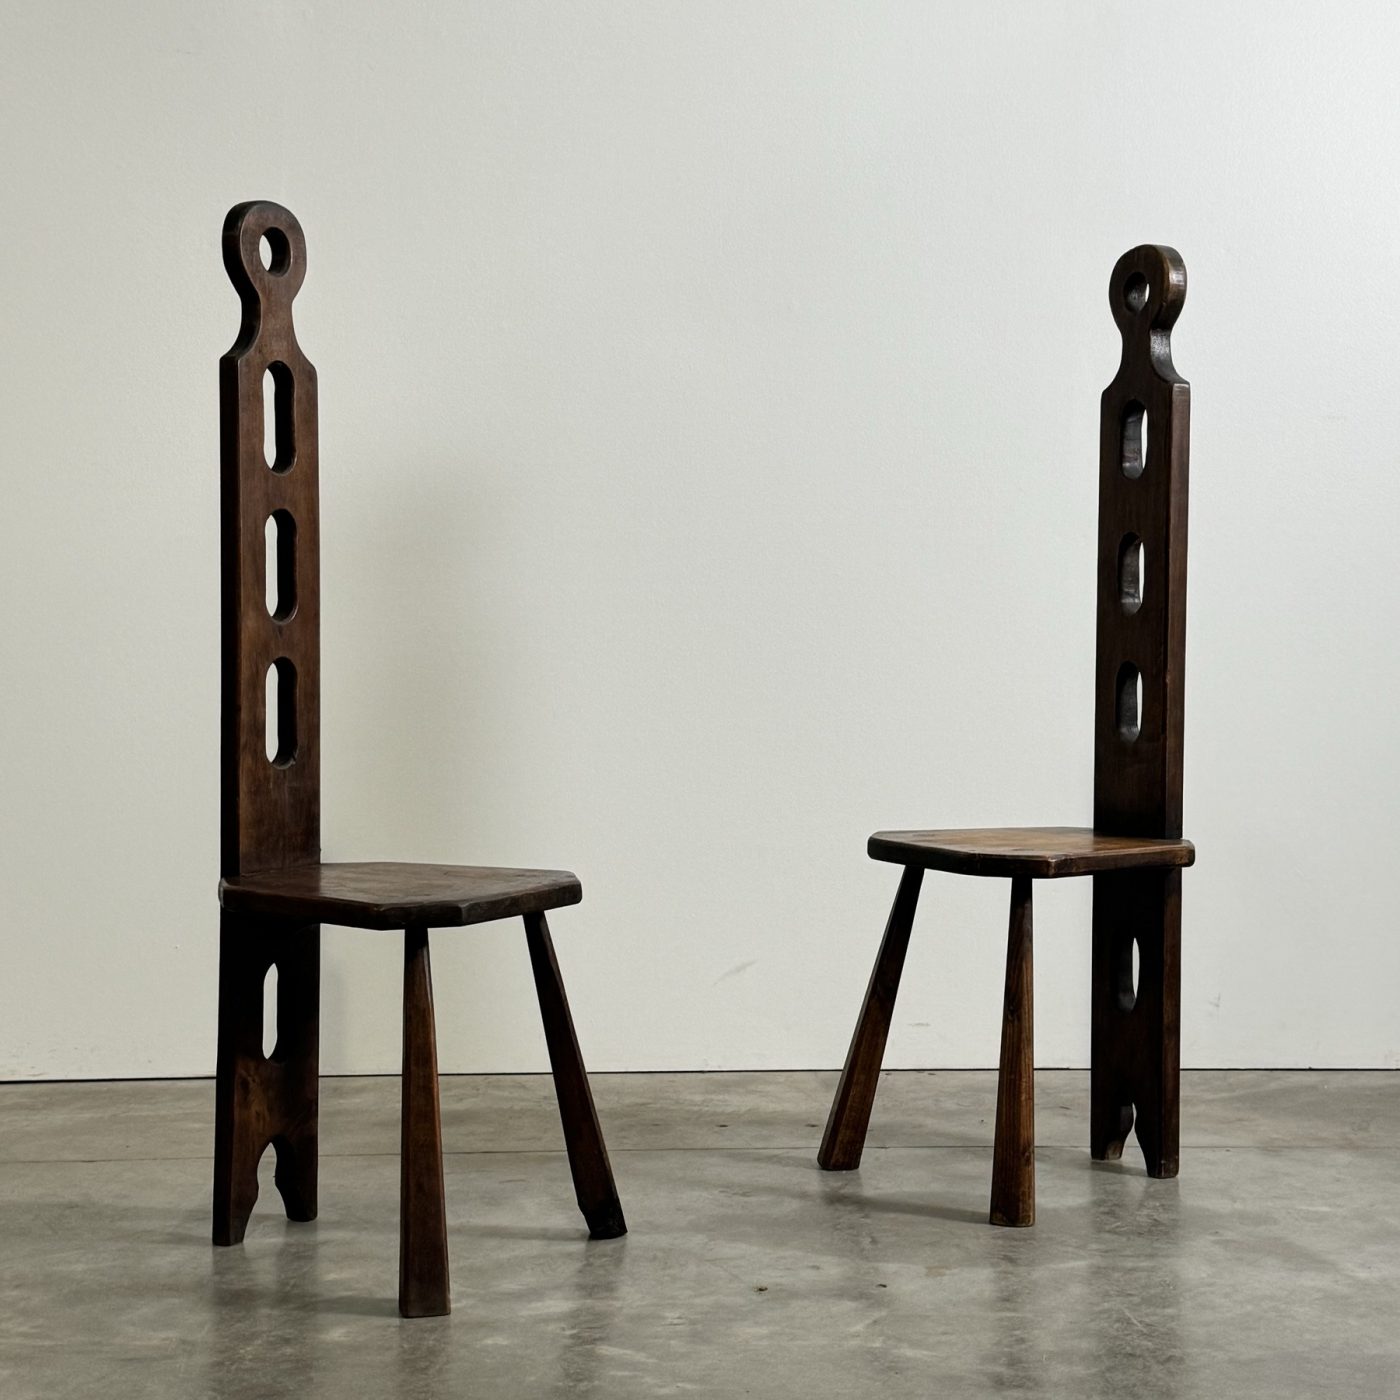 objet-vagabond-tripod-chairs0003